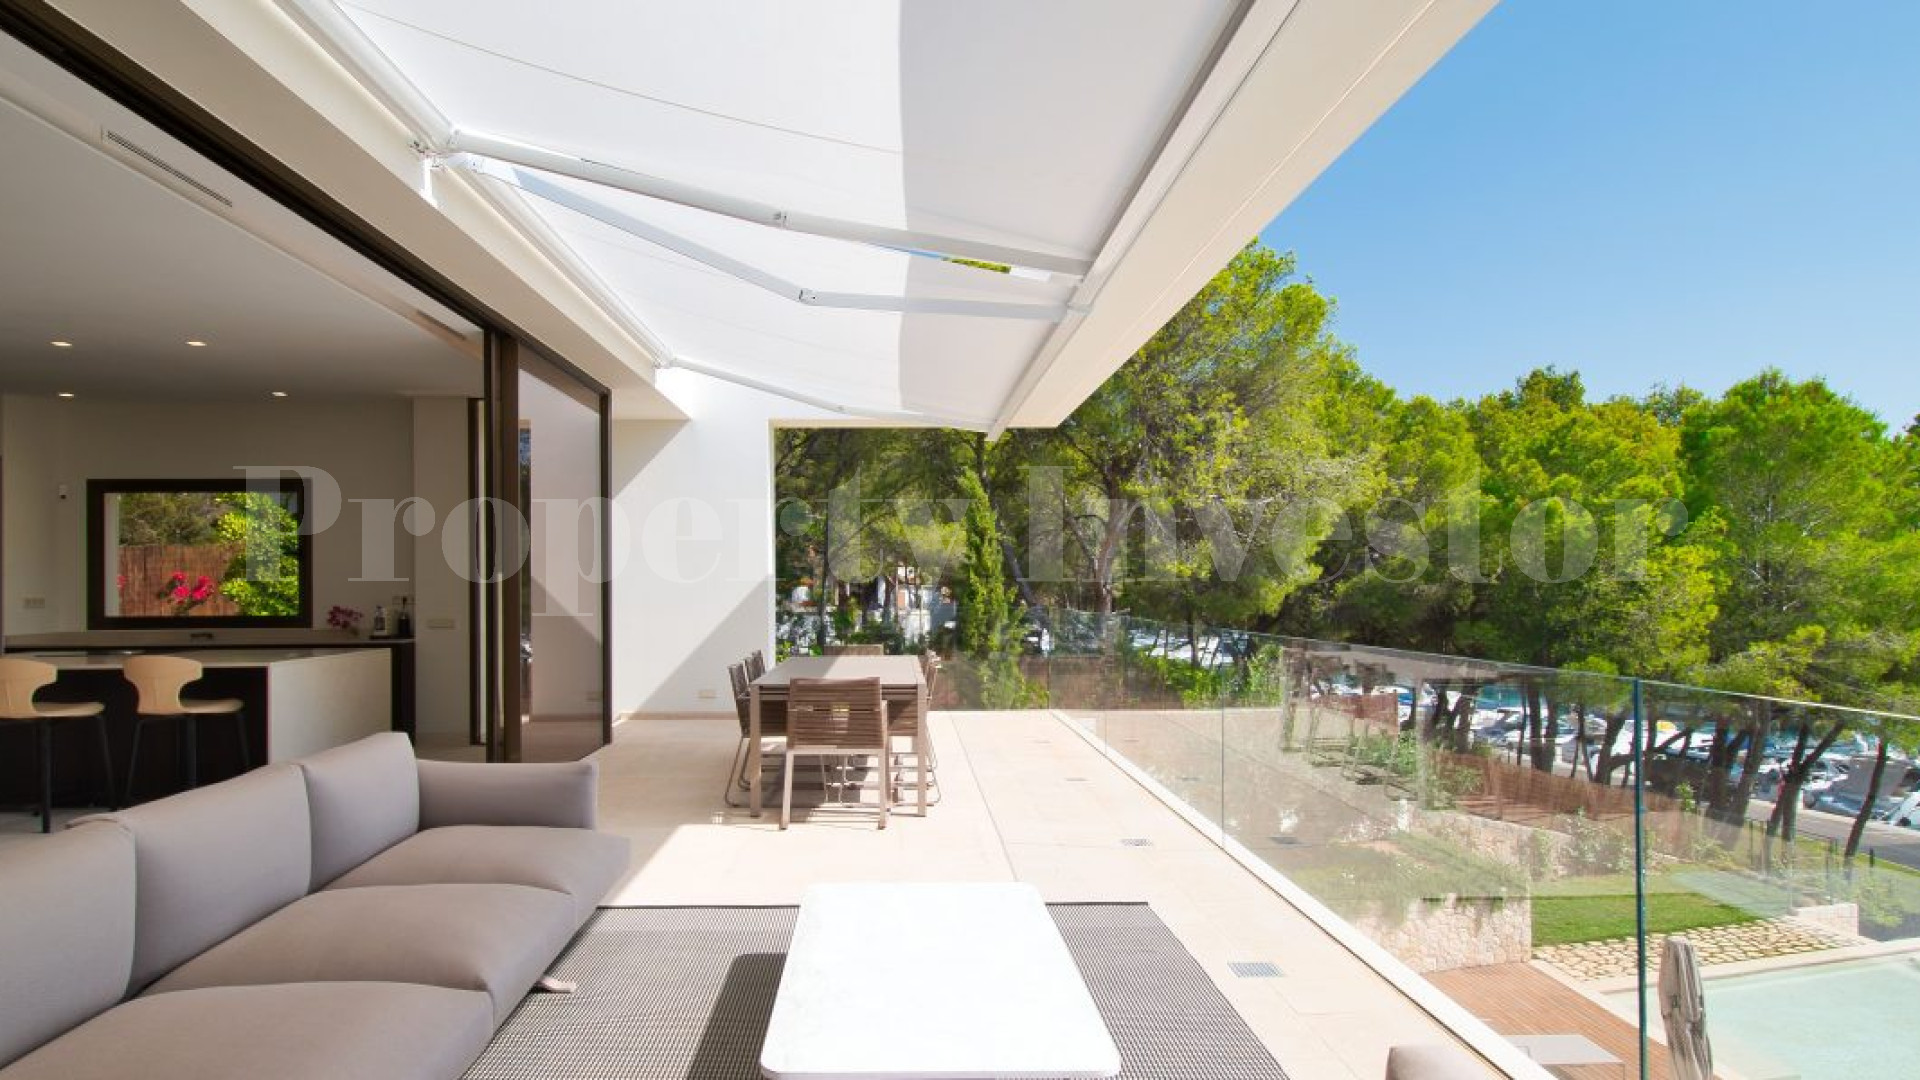 Exclusive New 4 Bedroom First Line Villa in “Club Náutico” in Santa Ponsa